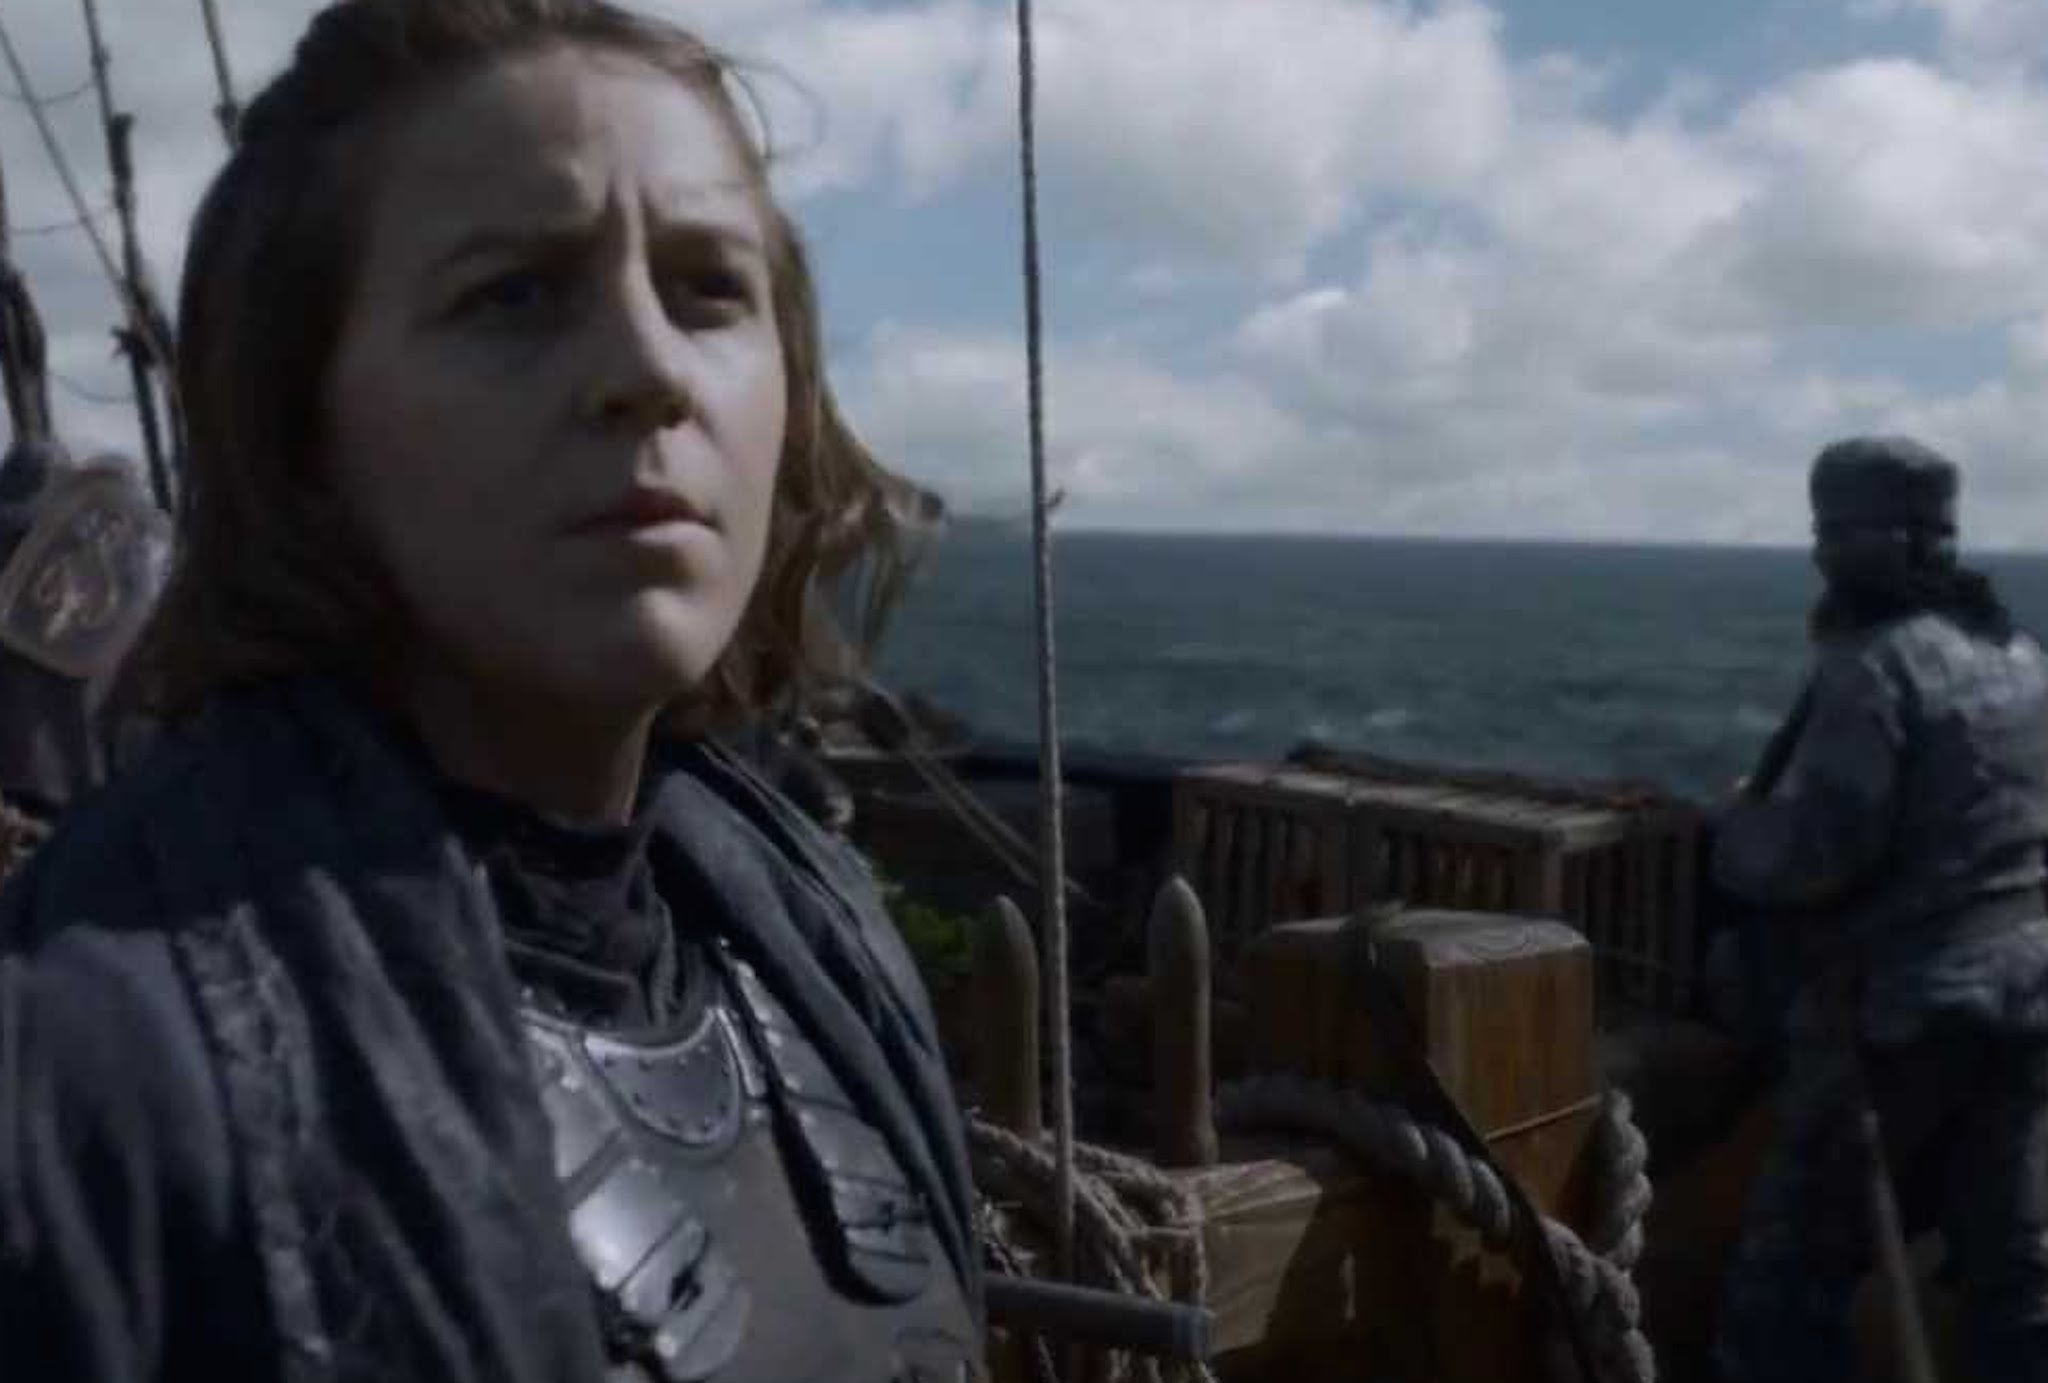 Gemma Whelan as Yara Greyjoy in Game of Thrones